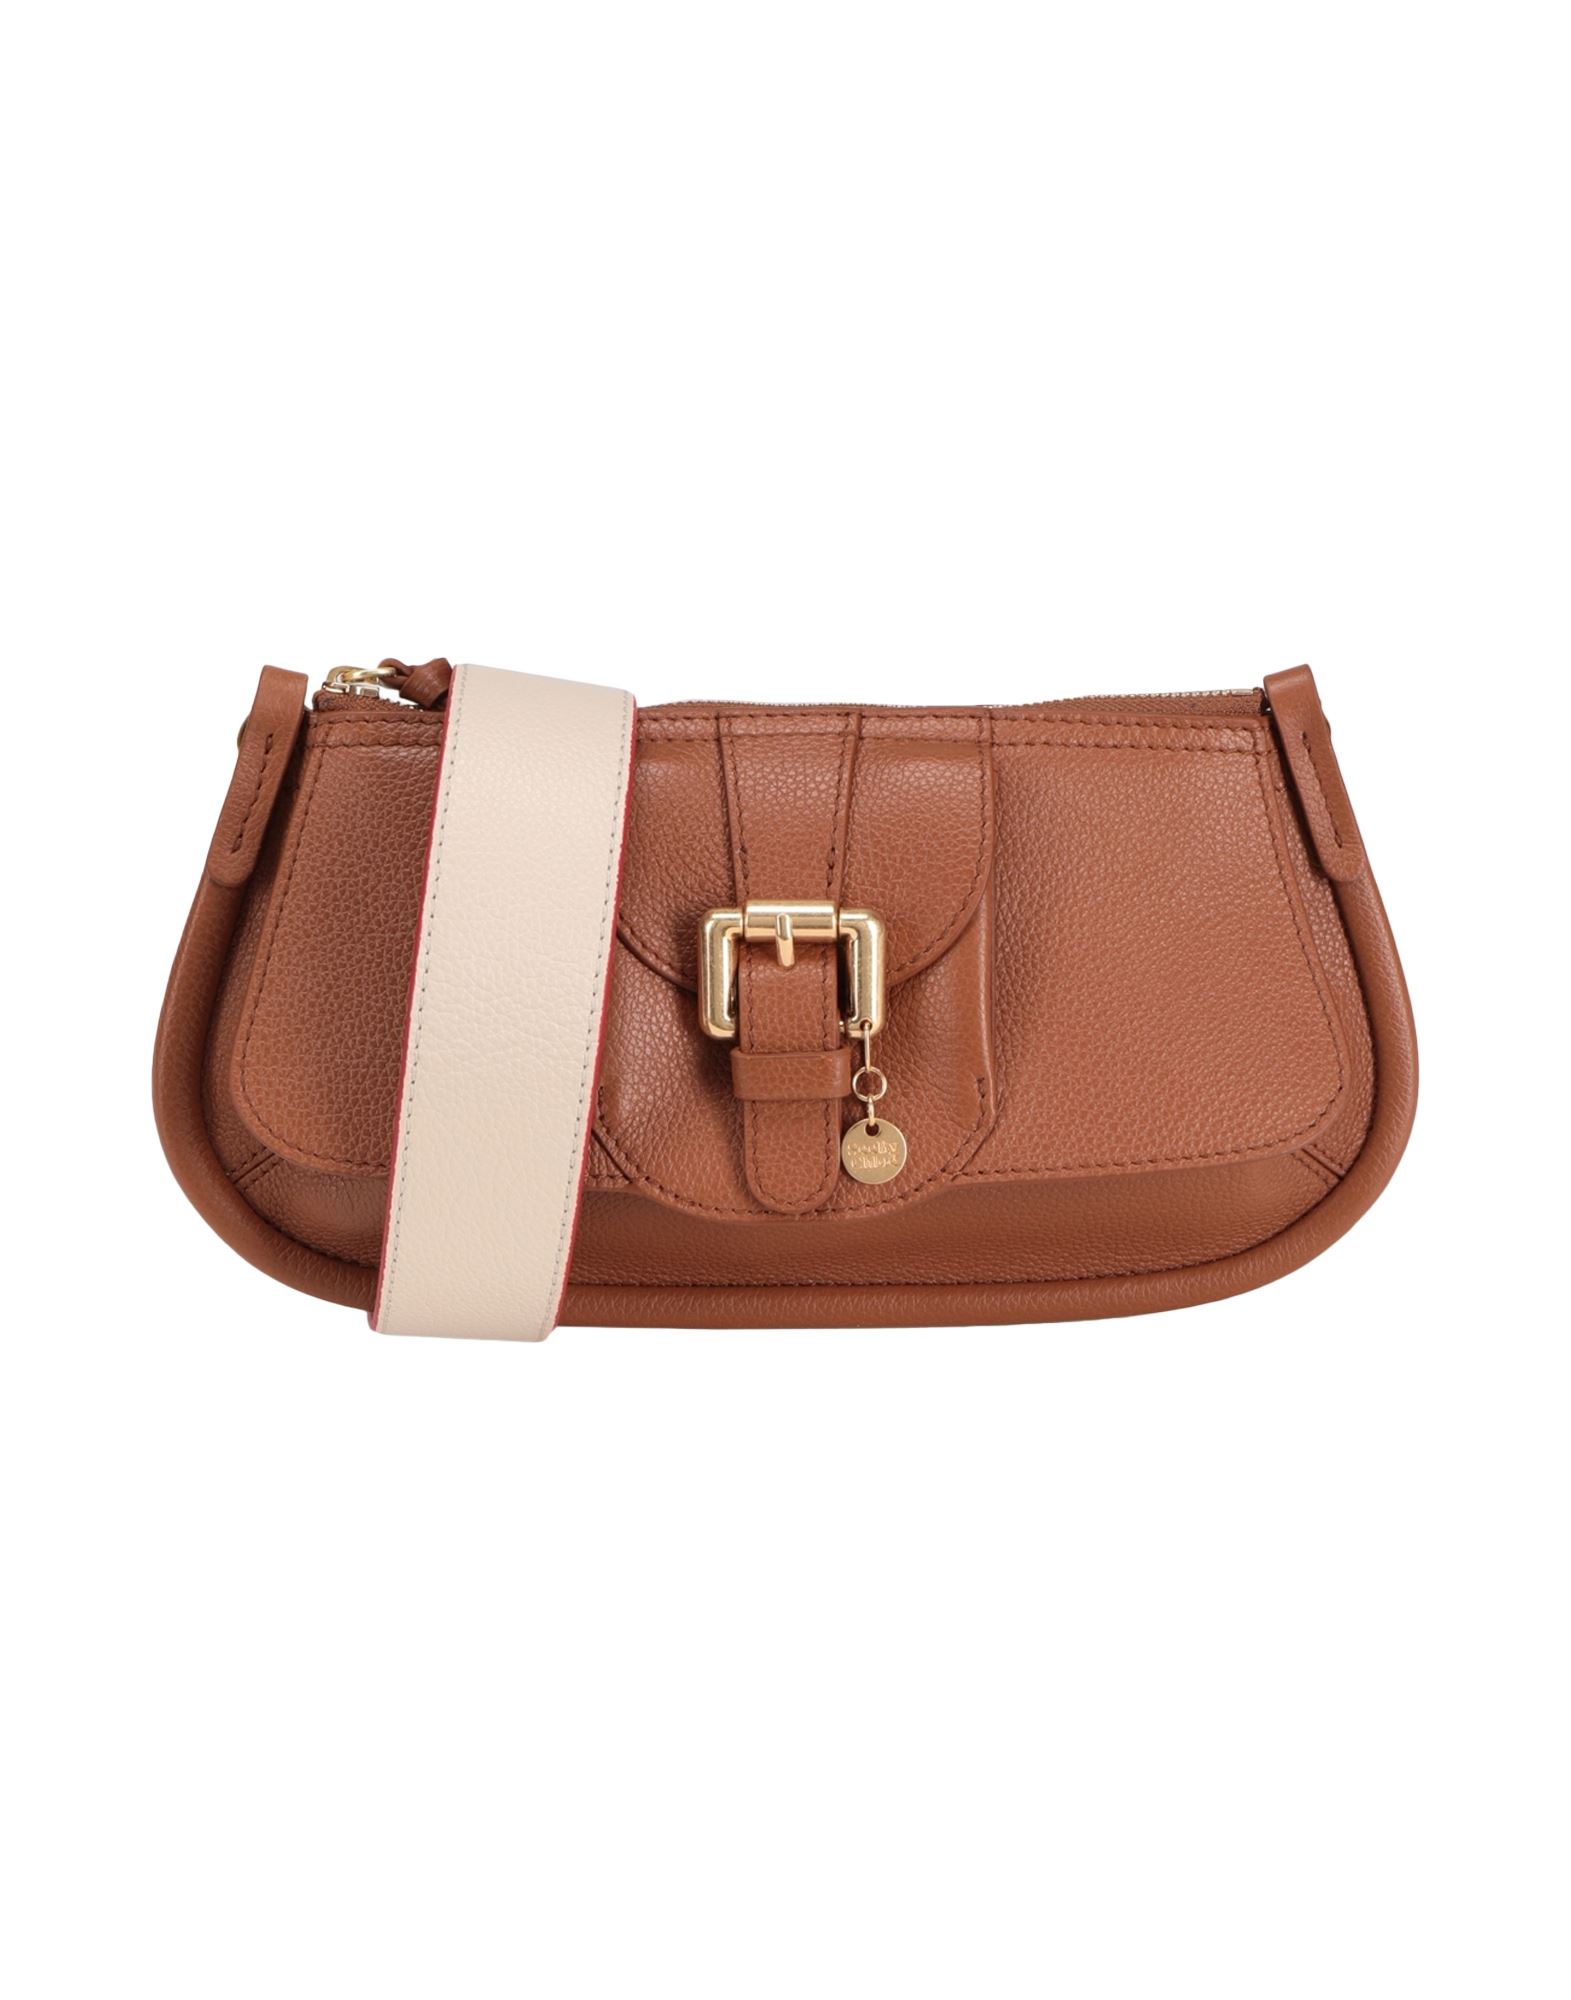 See By Chloé Handbags In Brown